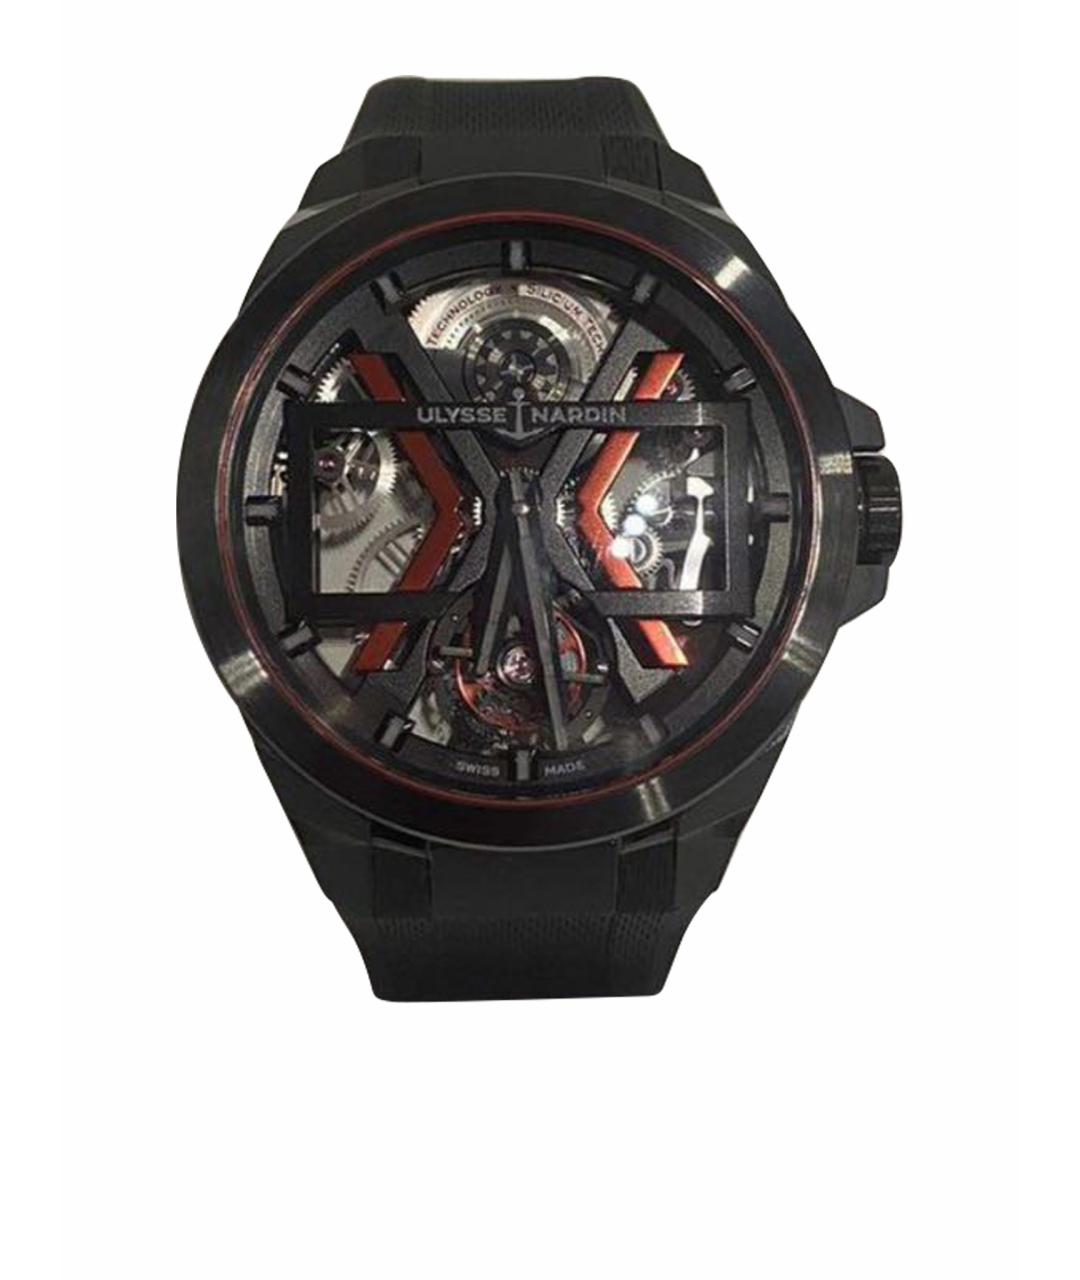 Ulysse Nardin Черные керамические часы, фото 1